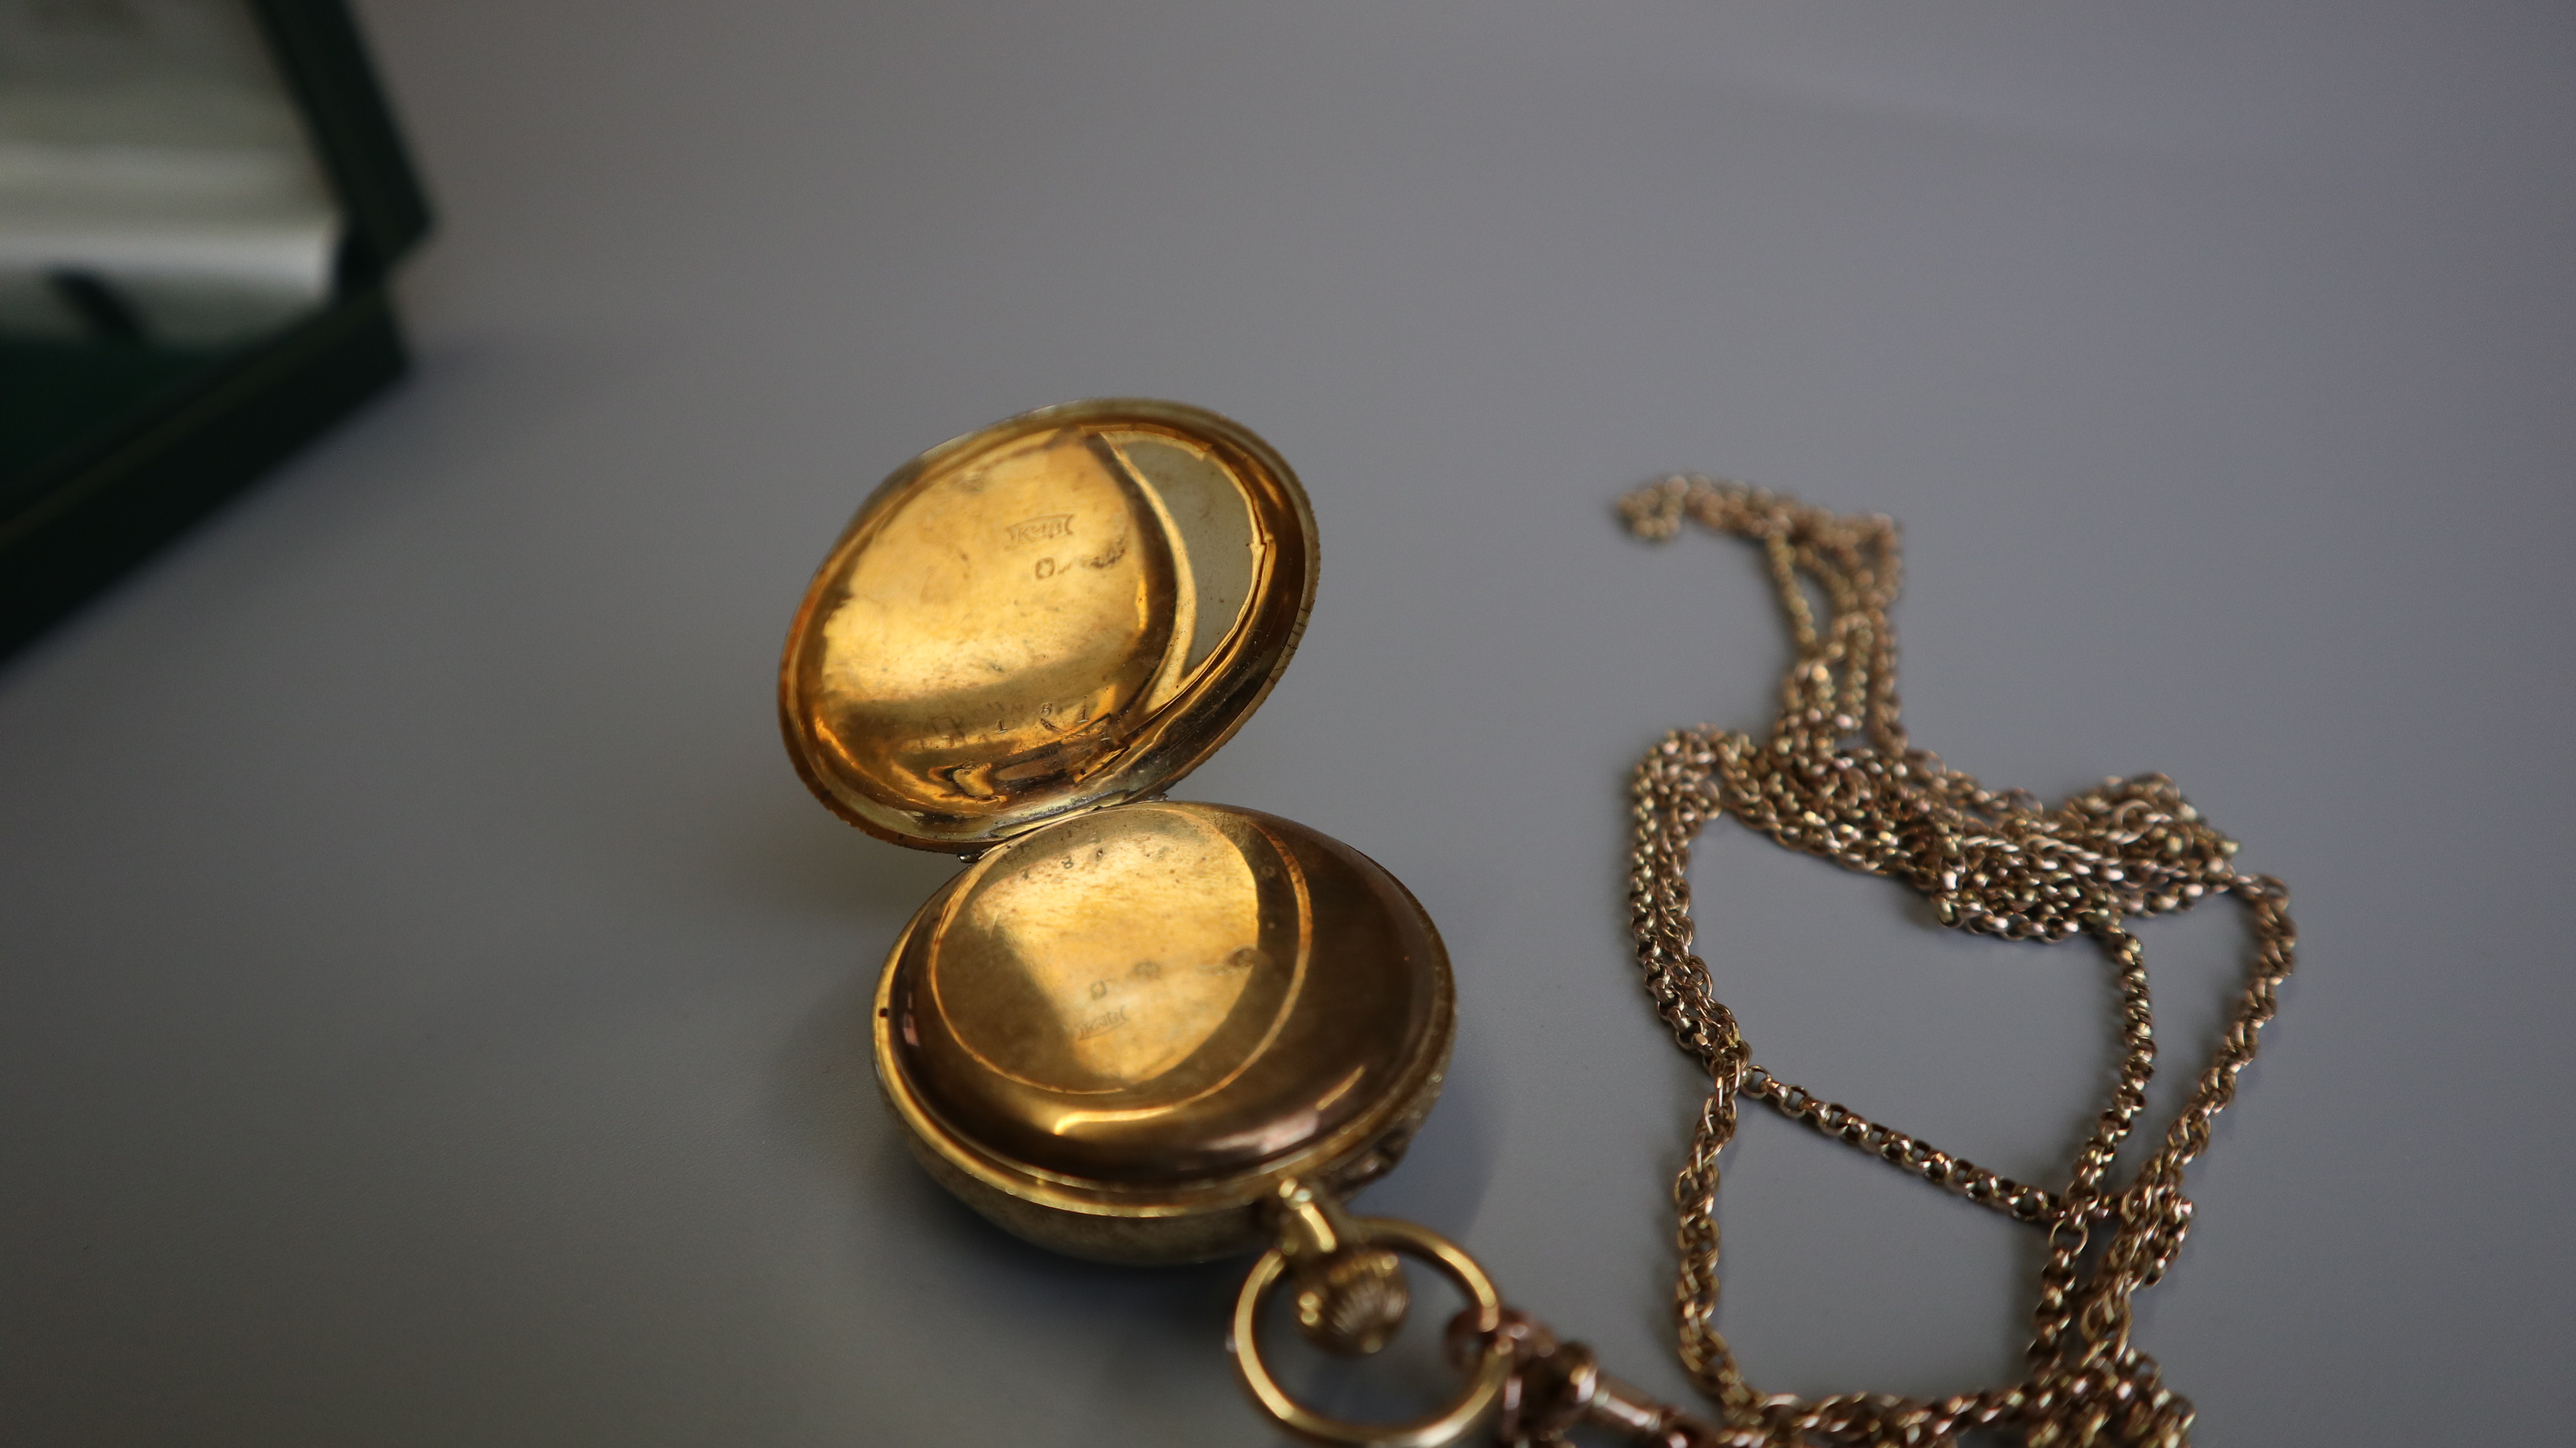 18ct gold watch with gold chain - Bild 5 aus 6